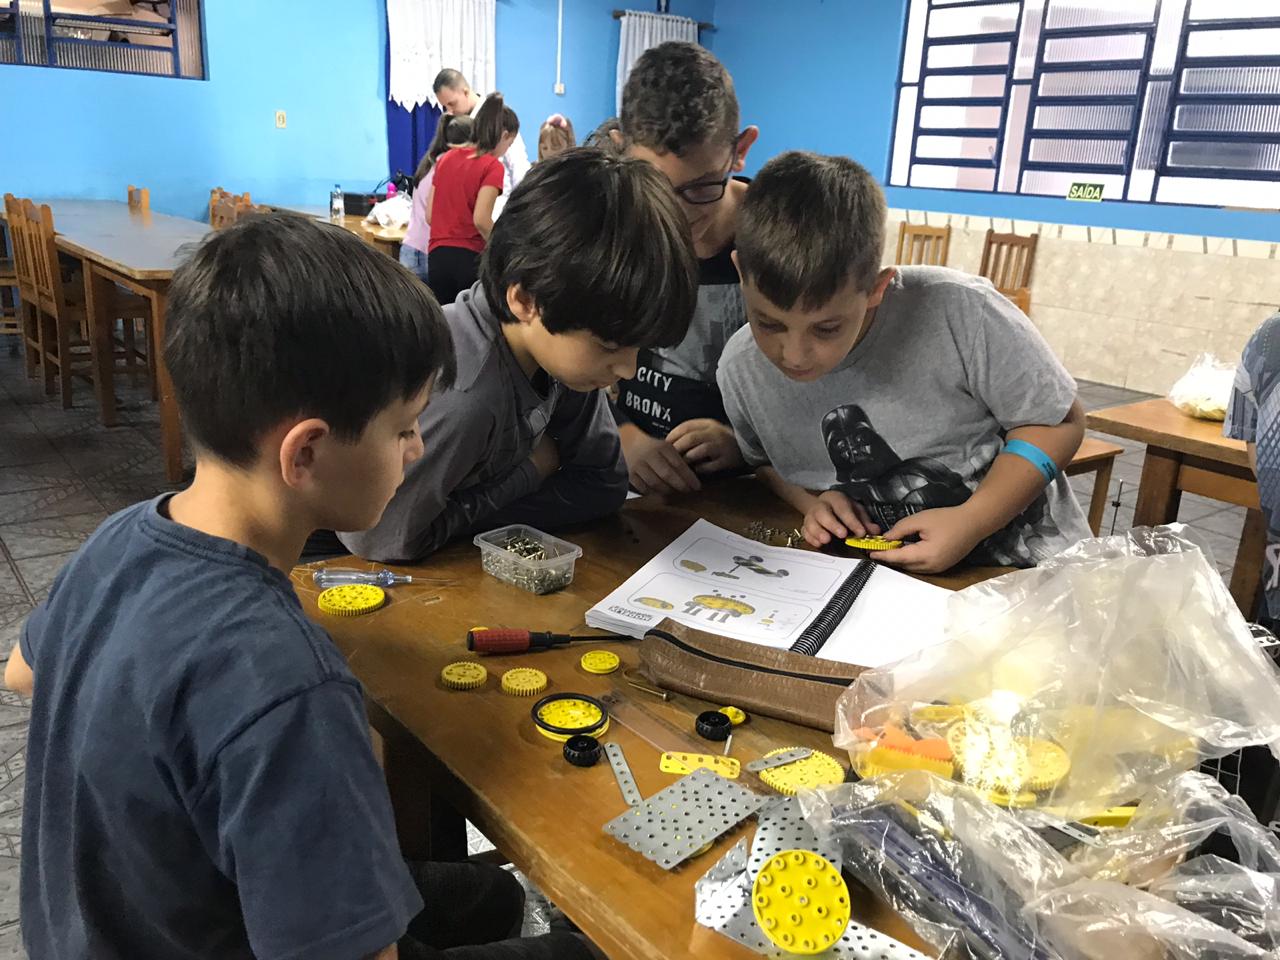 Crianças aprendem sobre matemática, física e lógica em atividades organizadas pelo Núcleo Brasileiro de Robótica.